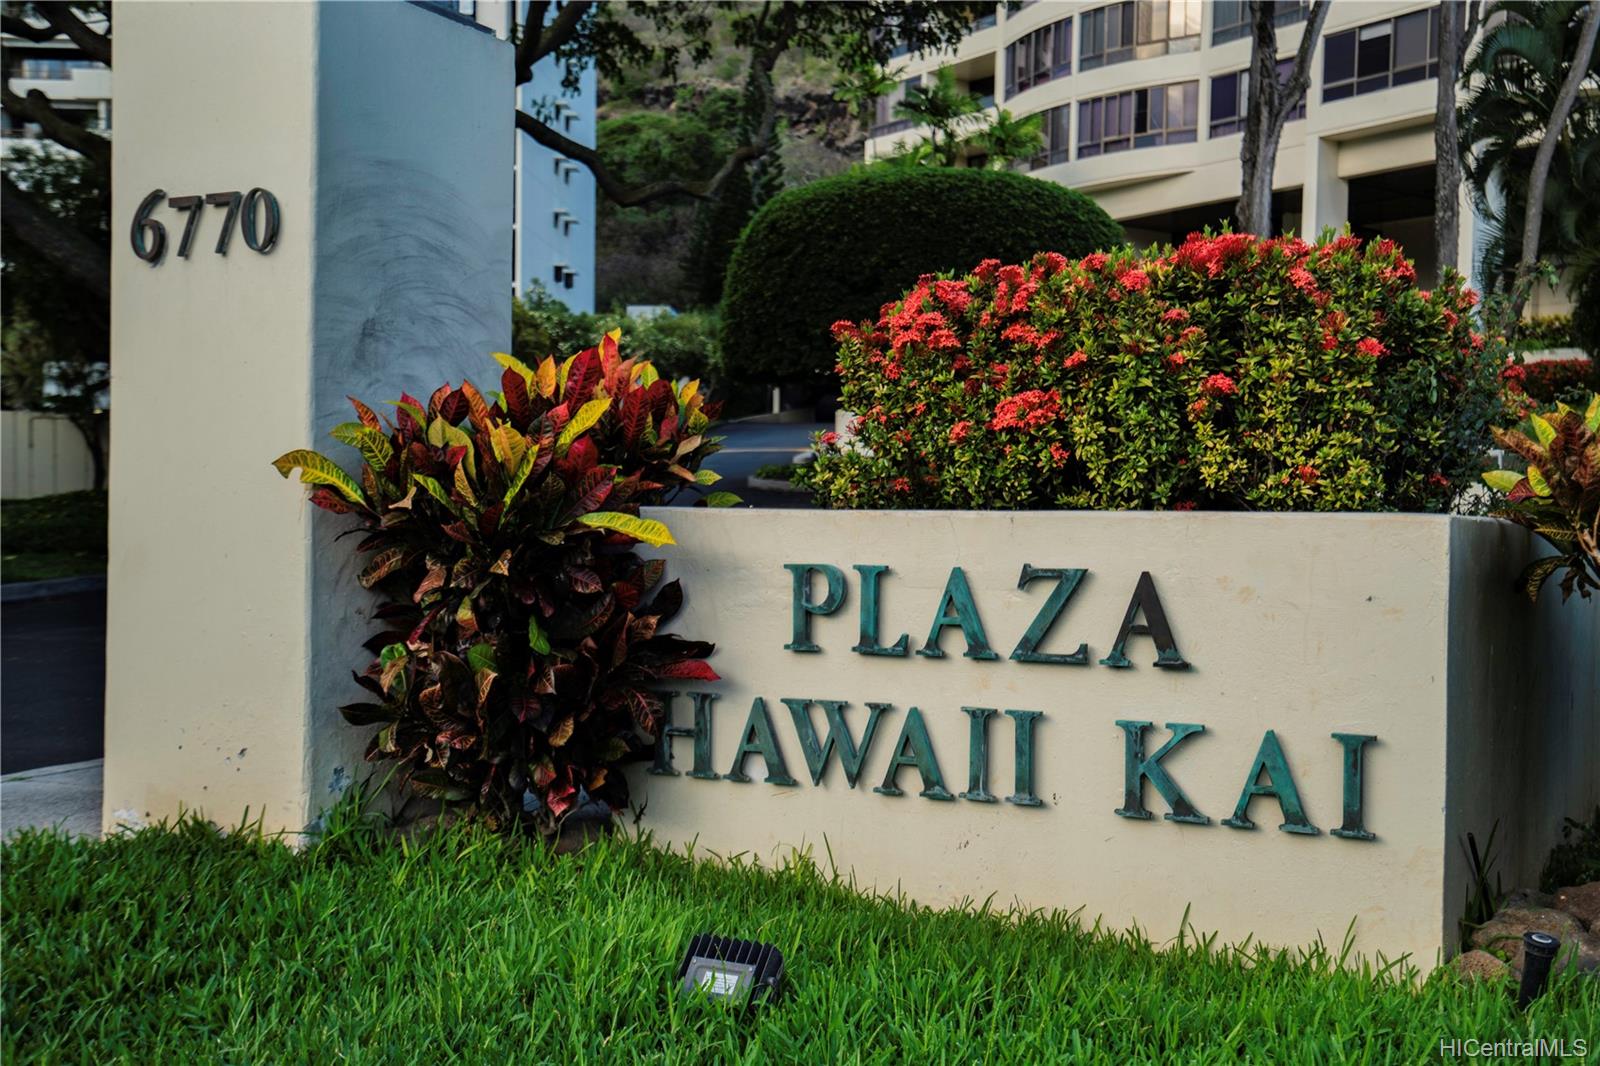 Plaza Hawaii Kai 6770 Hawaii Kai Drive  Unit 1006